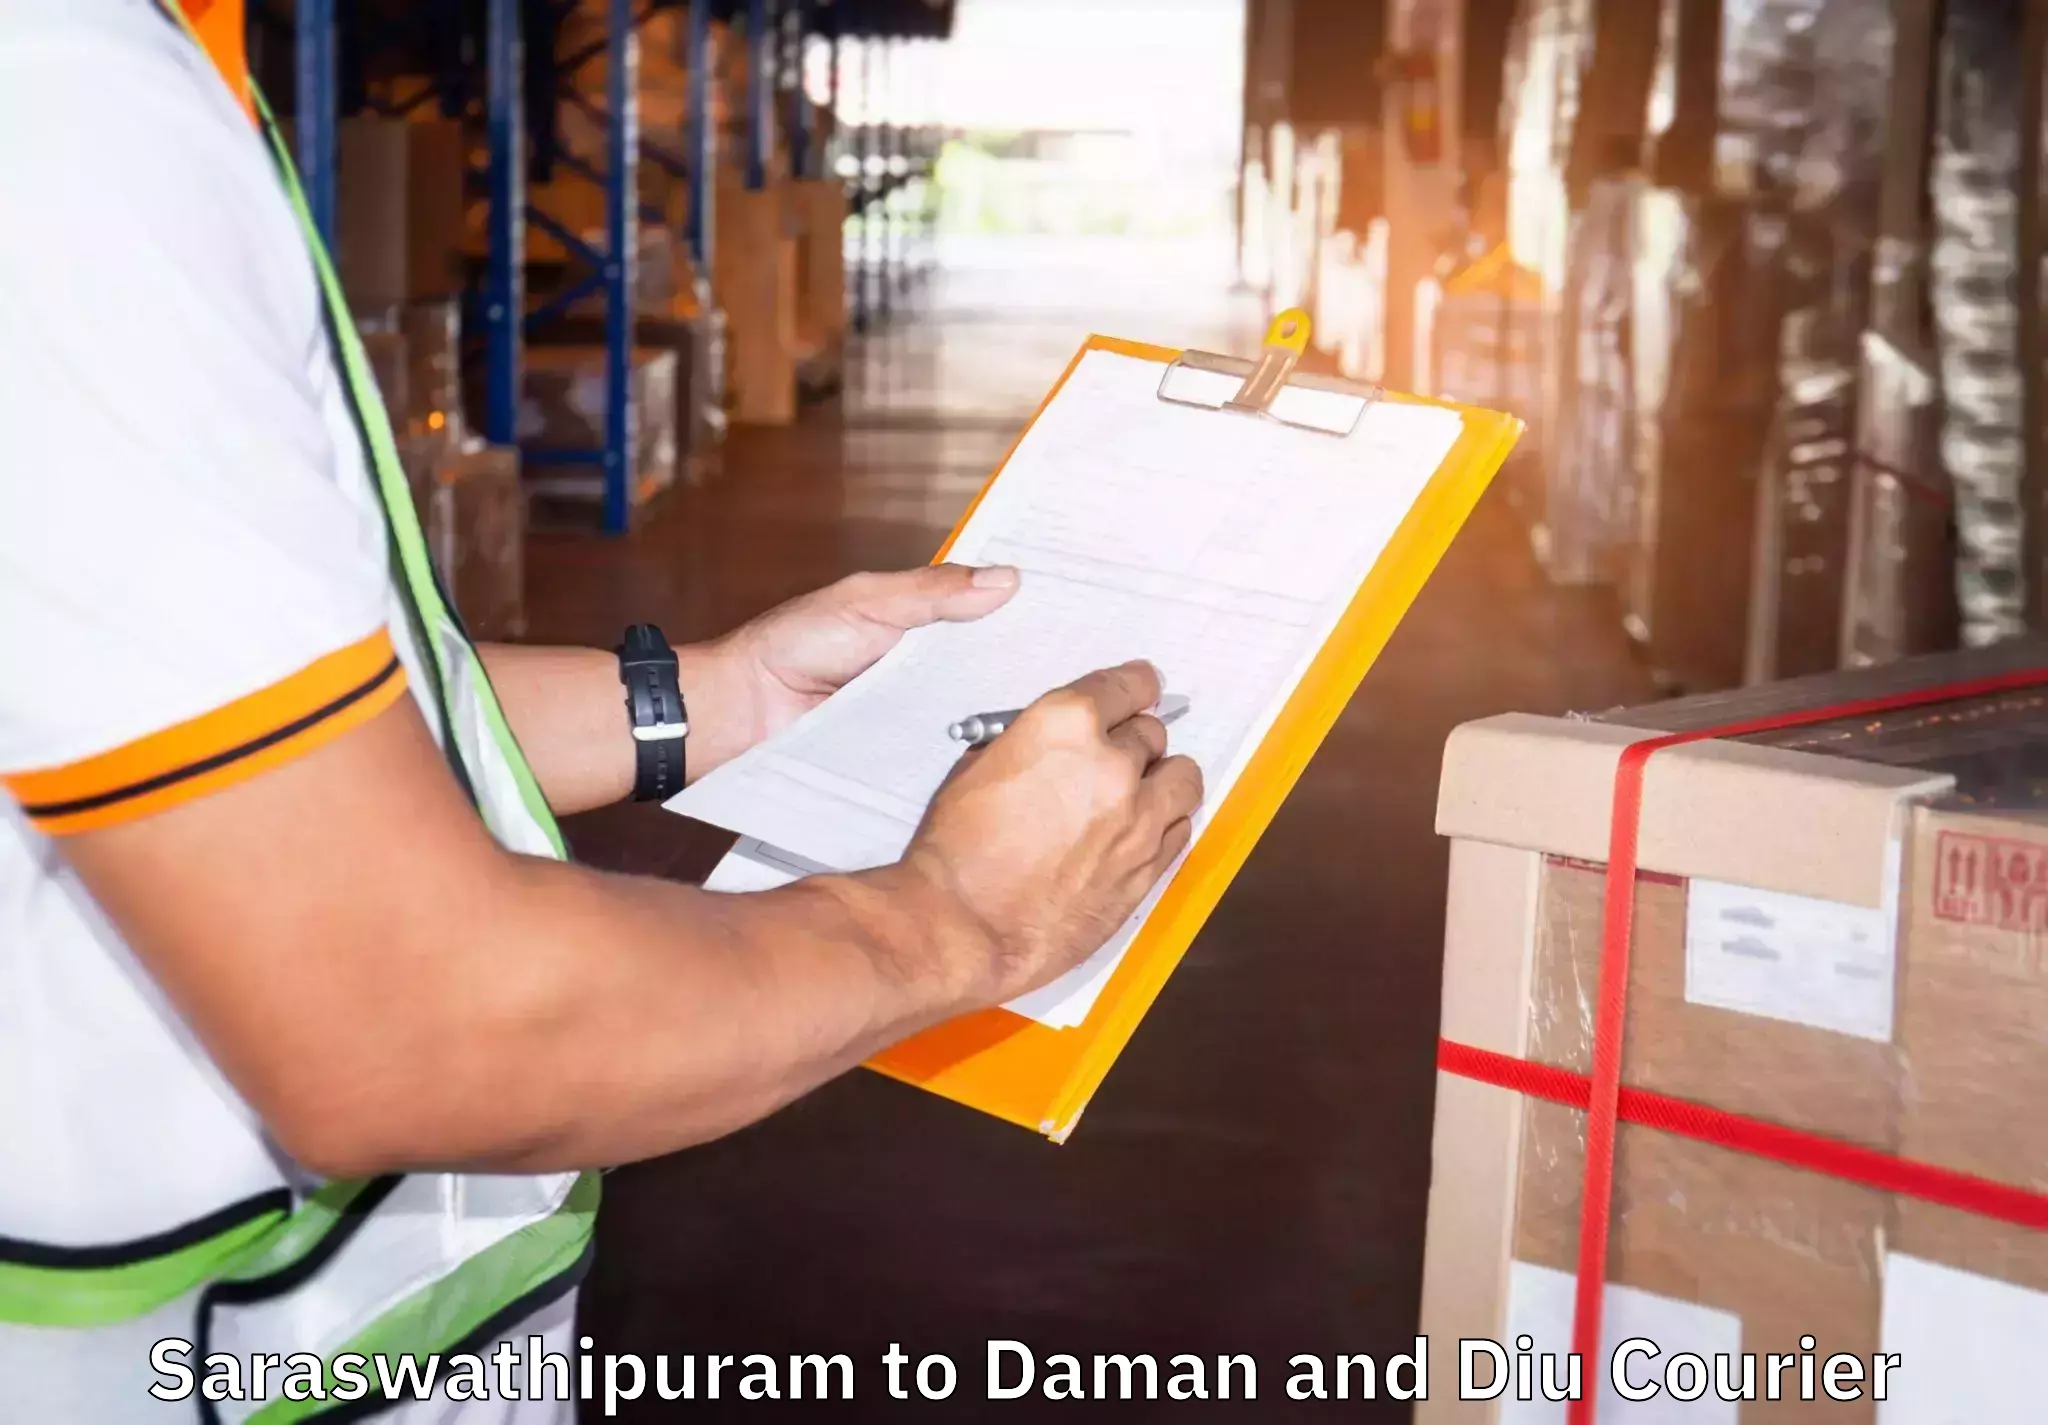 Moving and handling services in Saraswathipuram to Daman